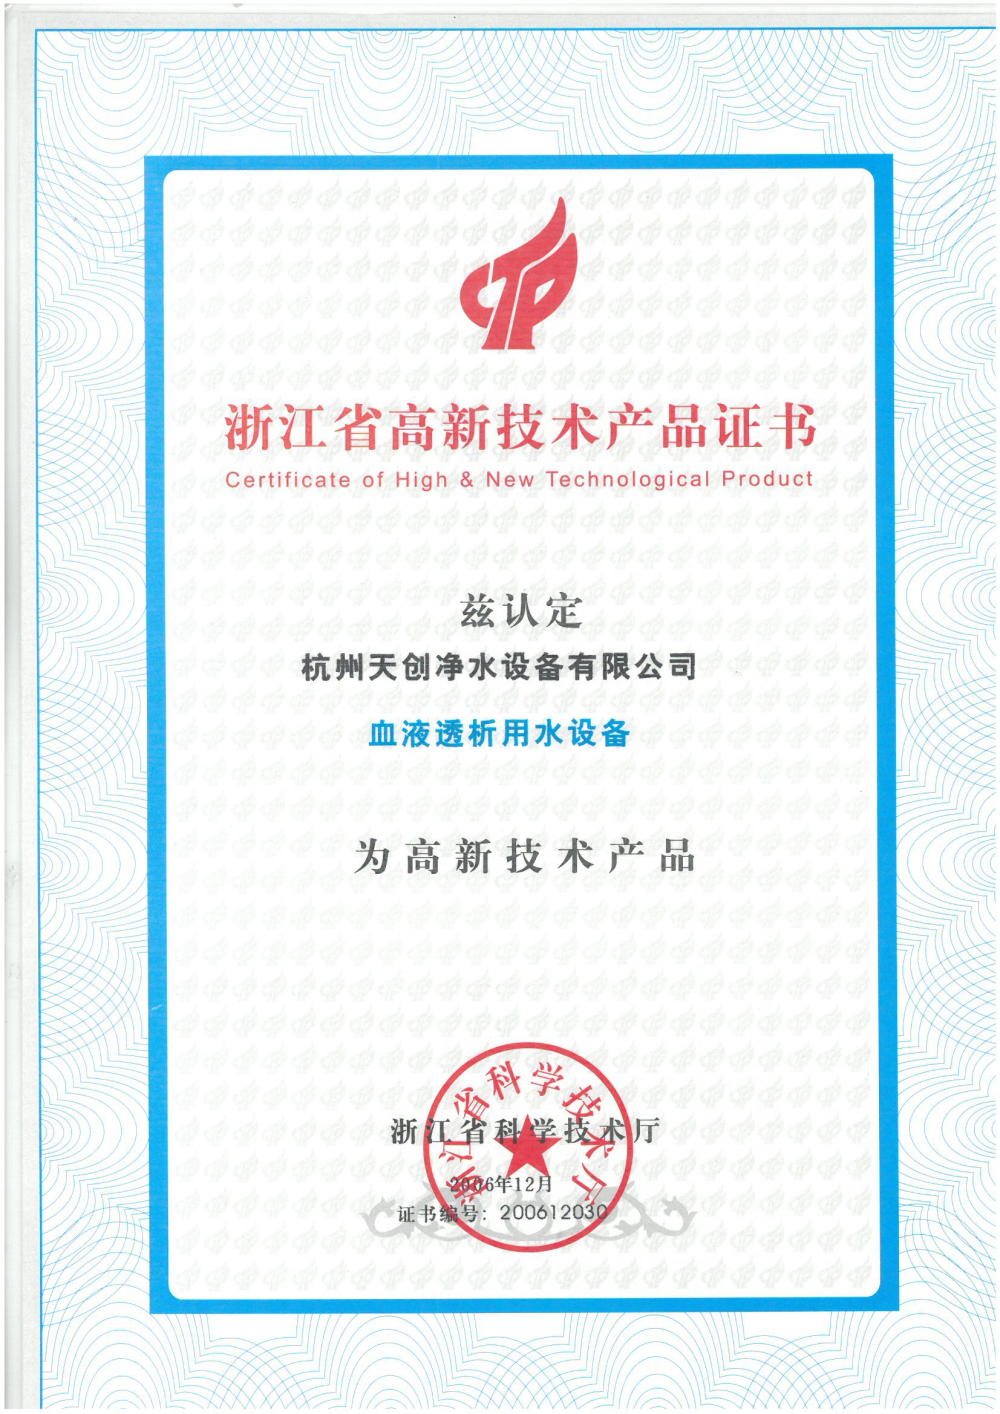 天创净水-浙江省高新技术产品证书